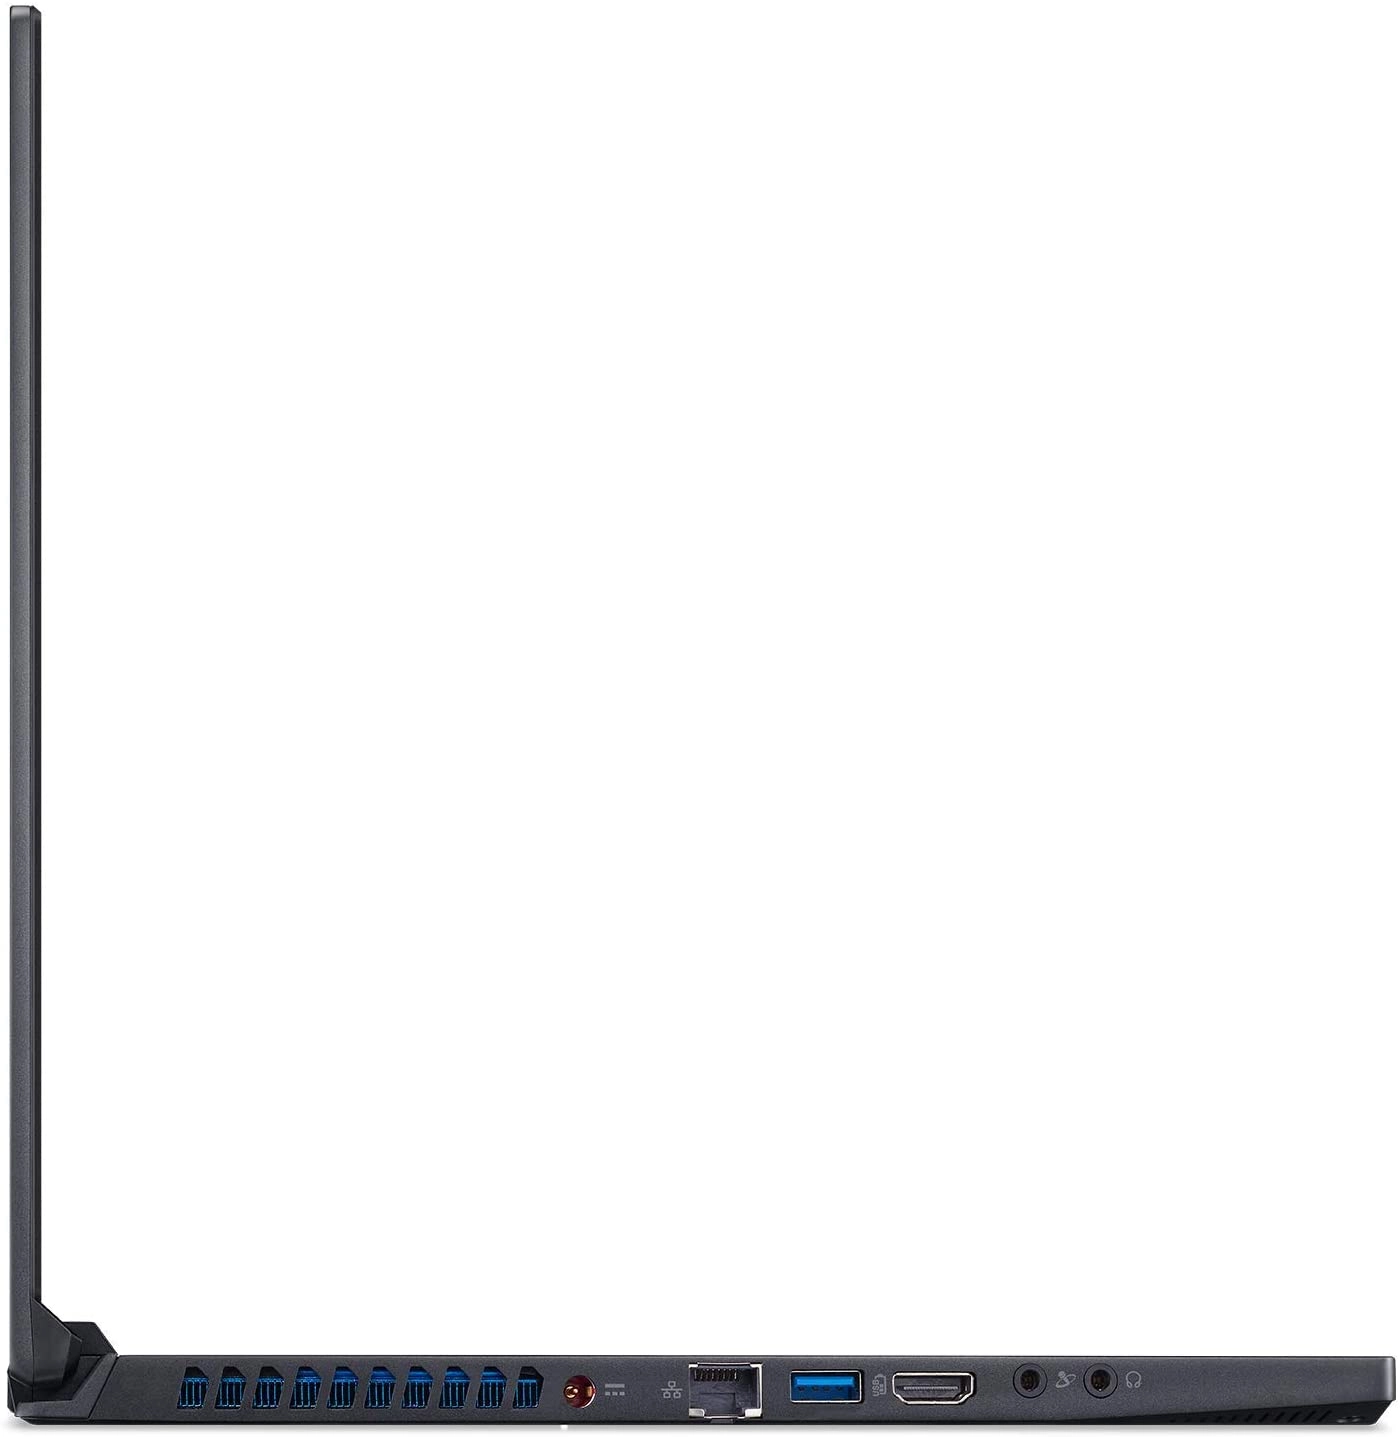 Acer Predator Triton 500 | PT515-51-74GC laptop image